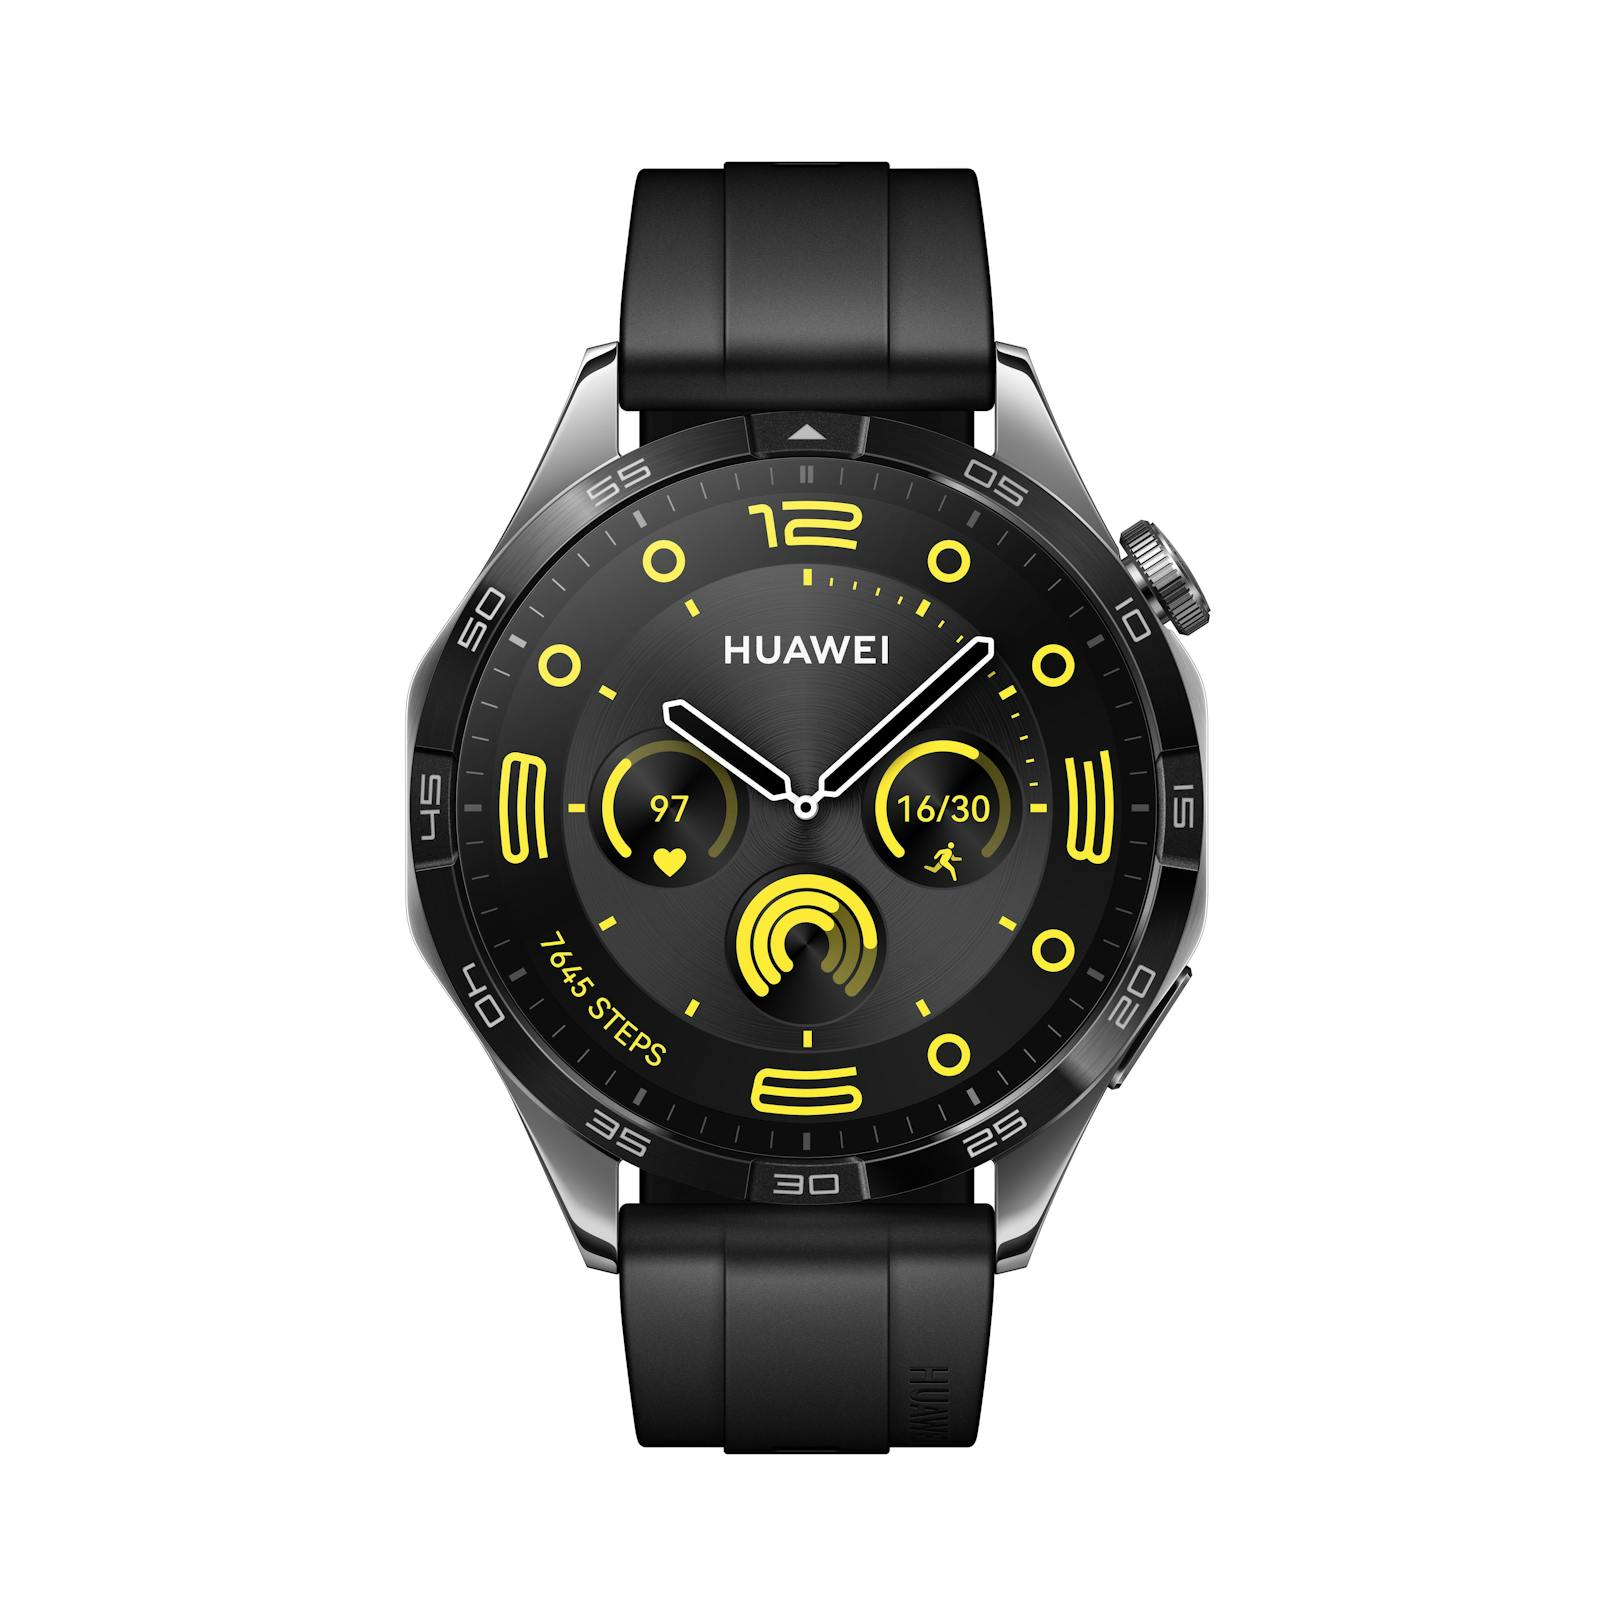 Ab sofort verfügbar ist die größere Uhren-Version mit einem schwarzen Fluoroelastomer-Armband ...